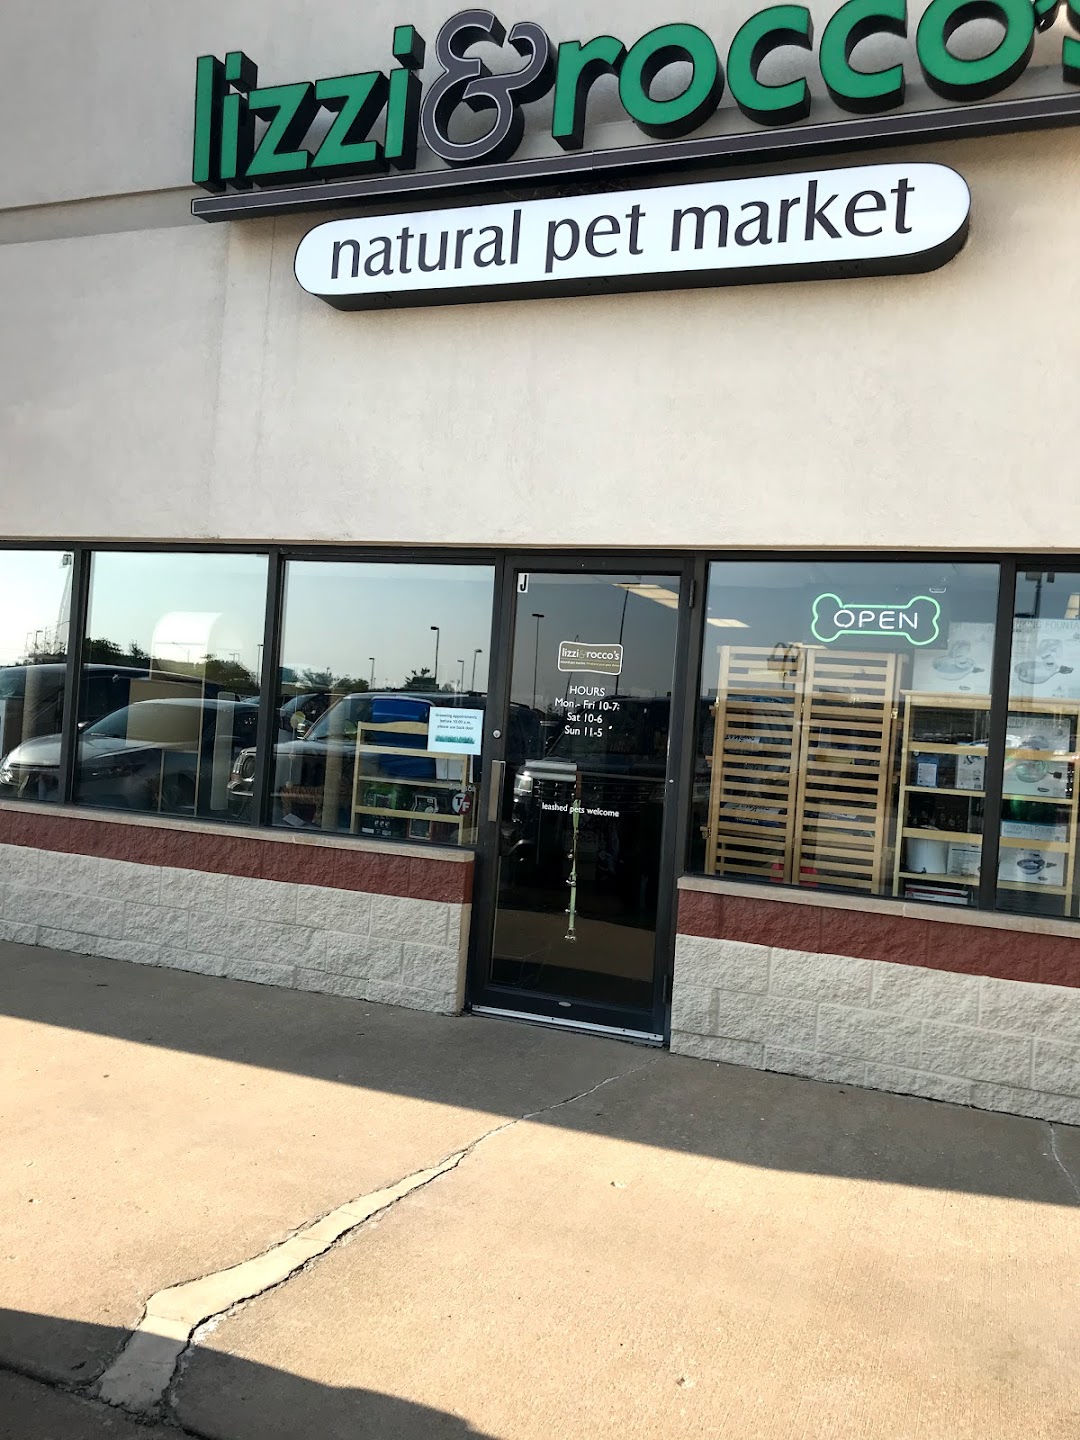 Lizzi and Roccos Natural Pet Market